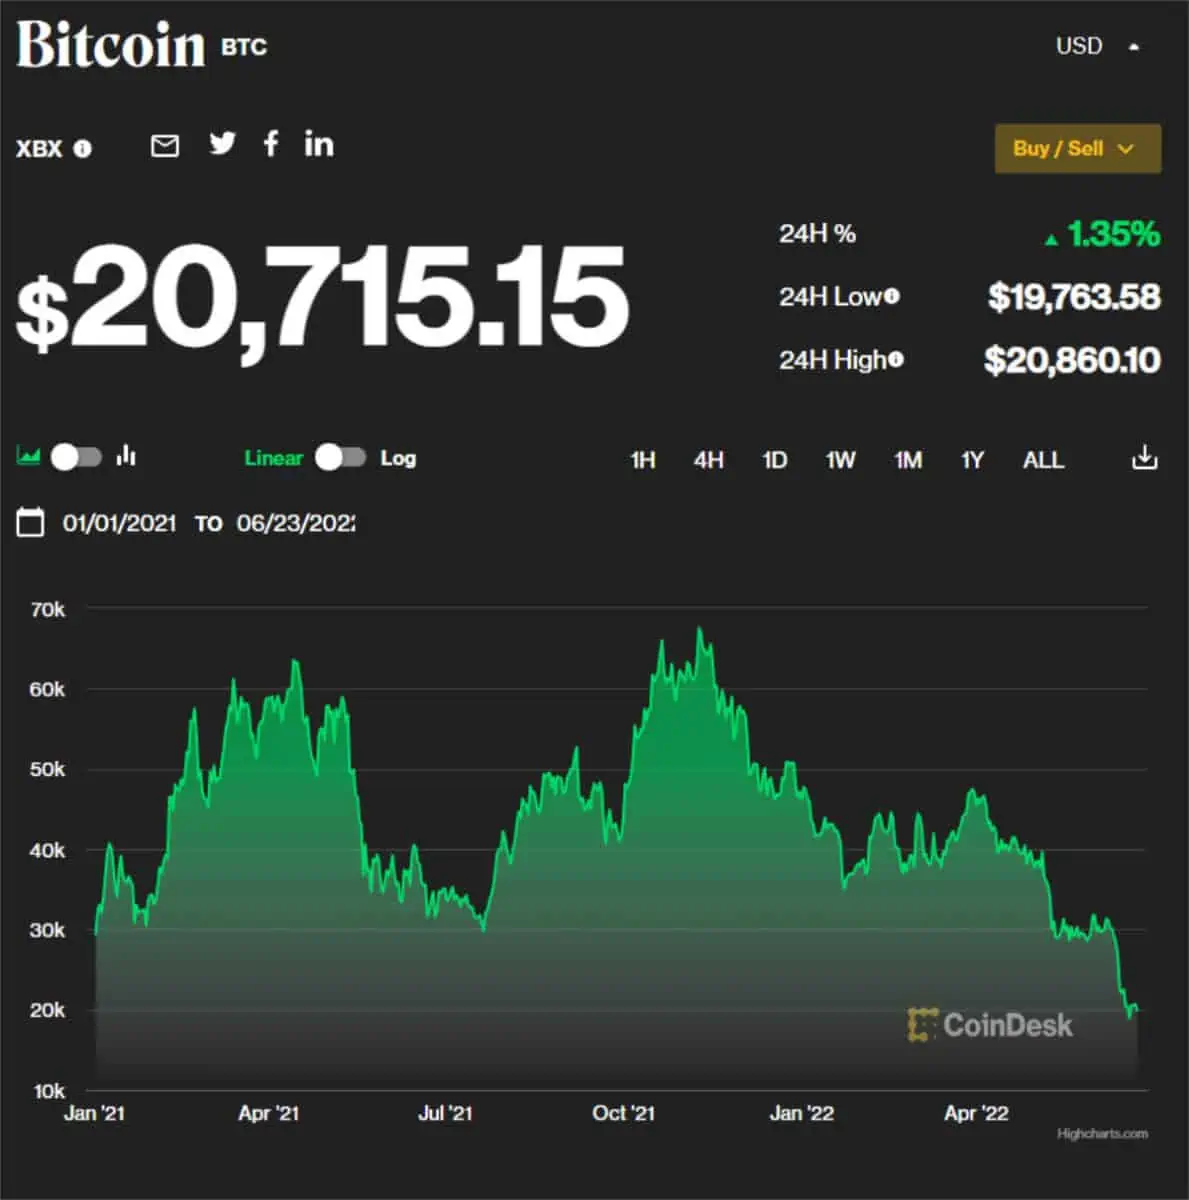 Bitcoing price June